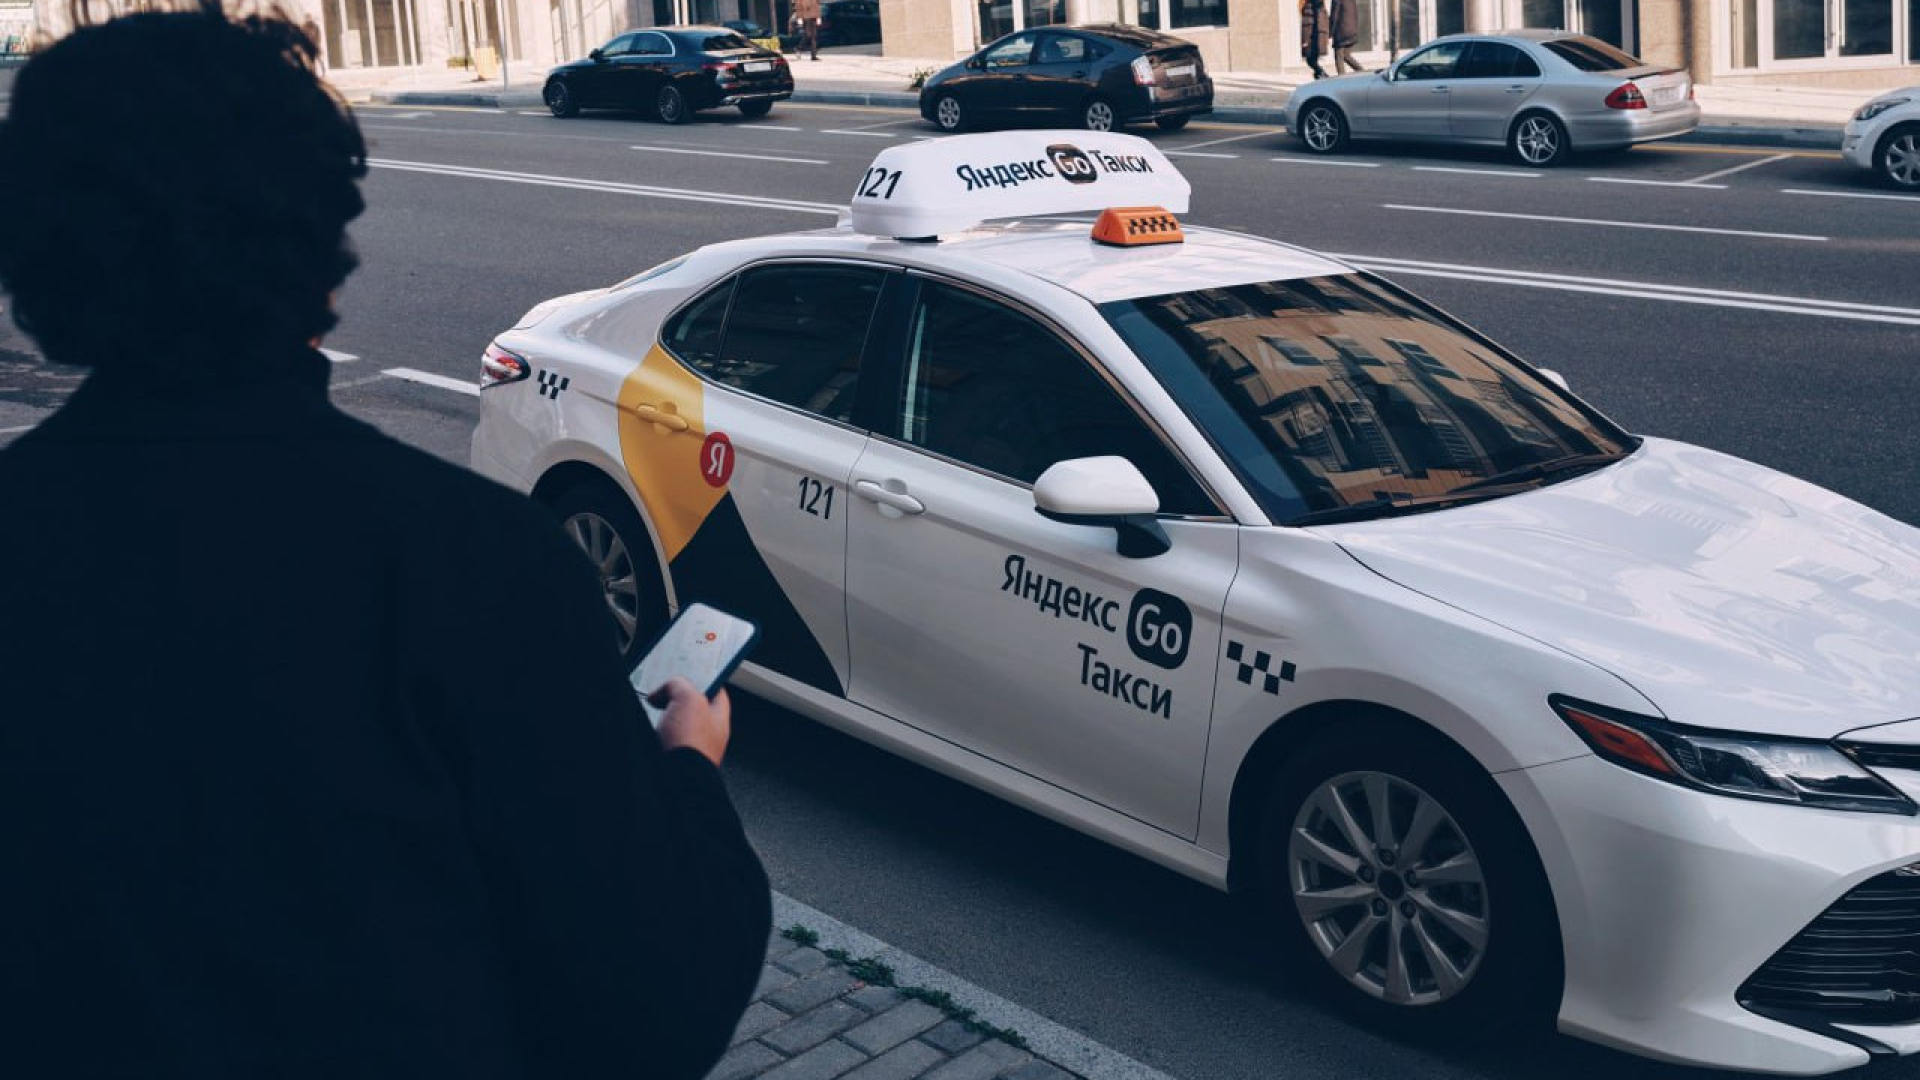 «Яндекс Go» не позволит вызвать такси в место, где остановка запрещена